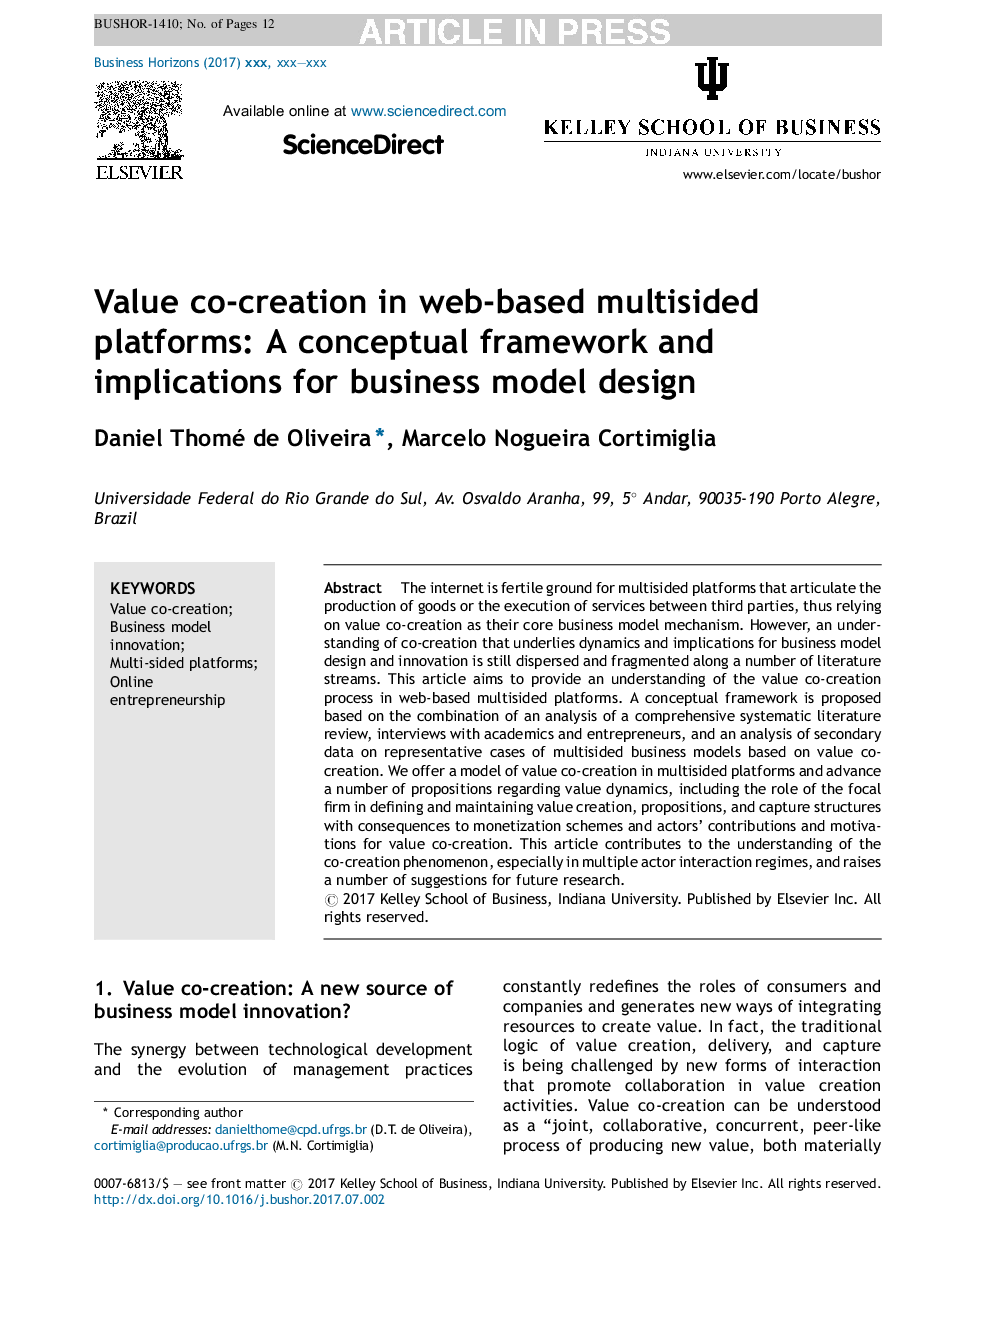 همکاری ارزش در سیستم های چند منظوره مبتنی بر وب: یک چارچوب مفهومی و مفاهیم برای طراحی مدل کسب و کار 